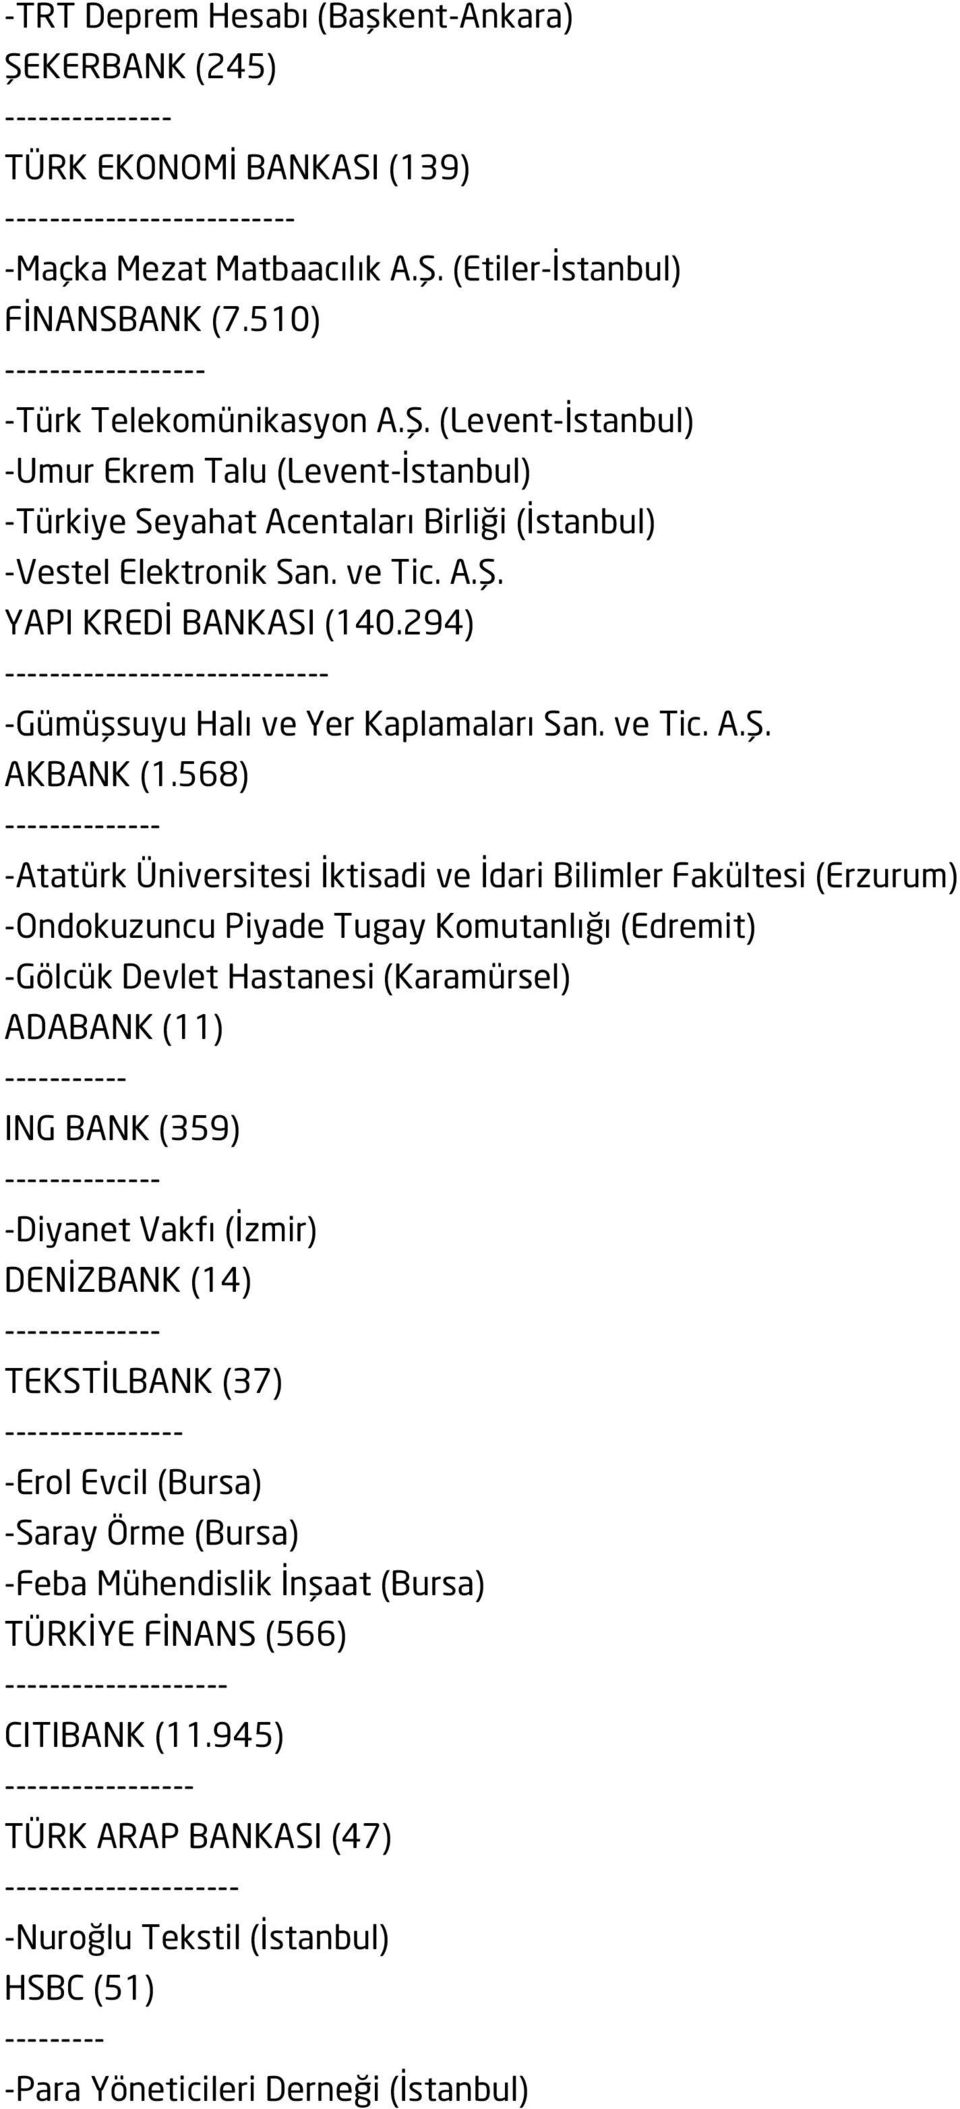 568) -Atatürk Üniversitesi İktisadi ve İdari Bilimler Fakültesi (Erzurum) -Ondokuzuncu Piyade Tugay Komutanlığı (Edremit) -Gölcük Devlet Hastanesi (Karamürsel) ADABANK (11) ----------- ING BANK (359)